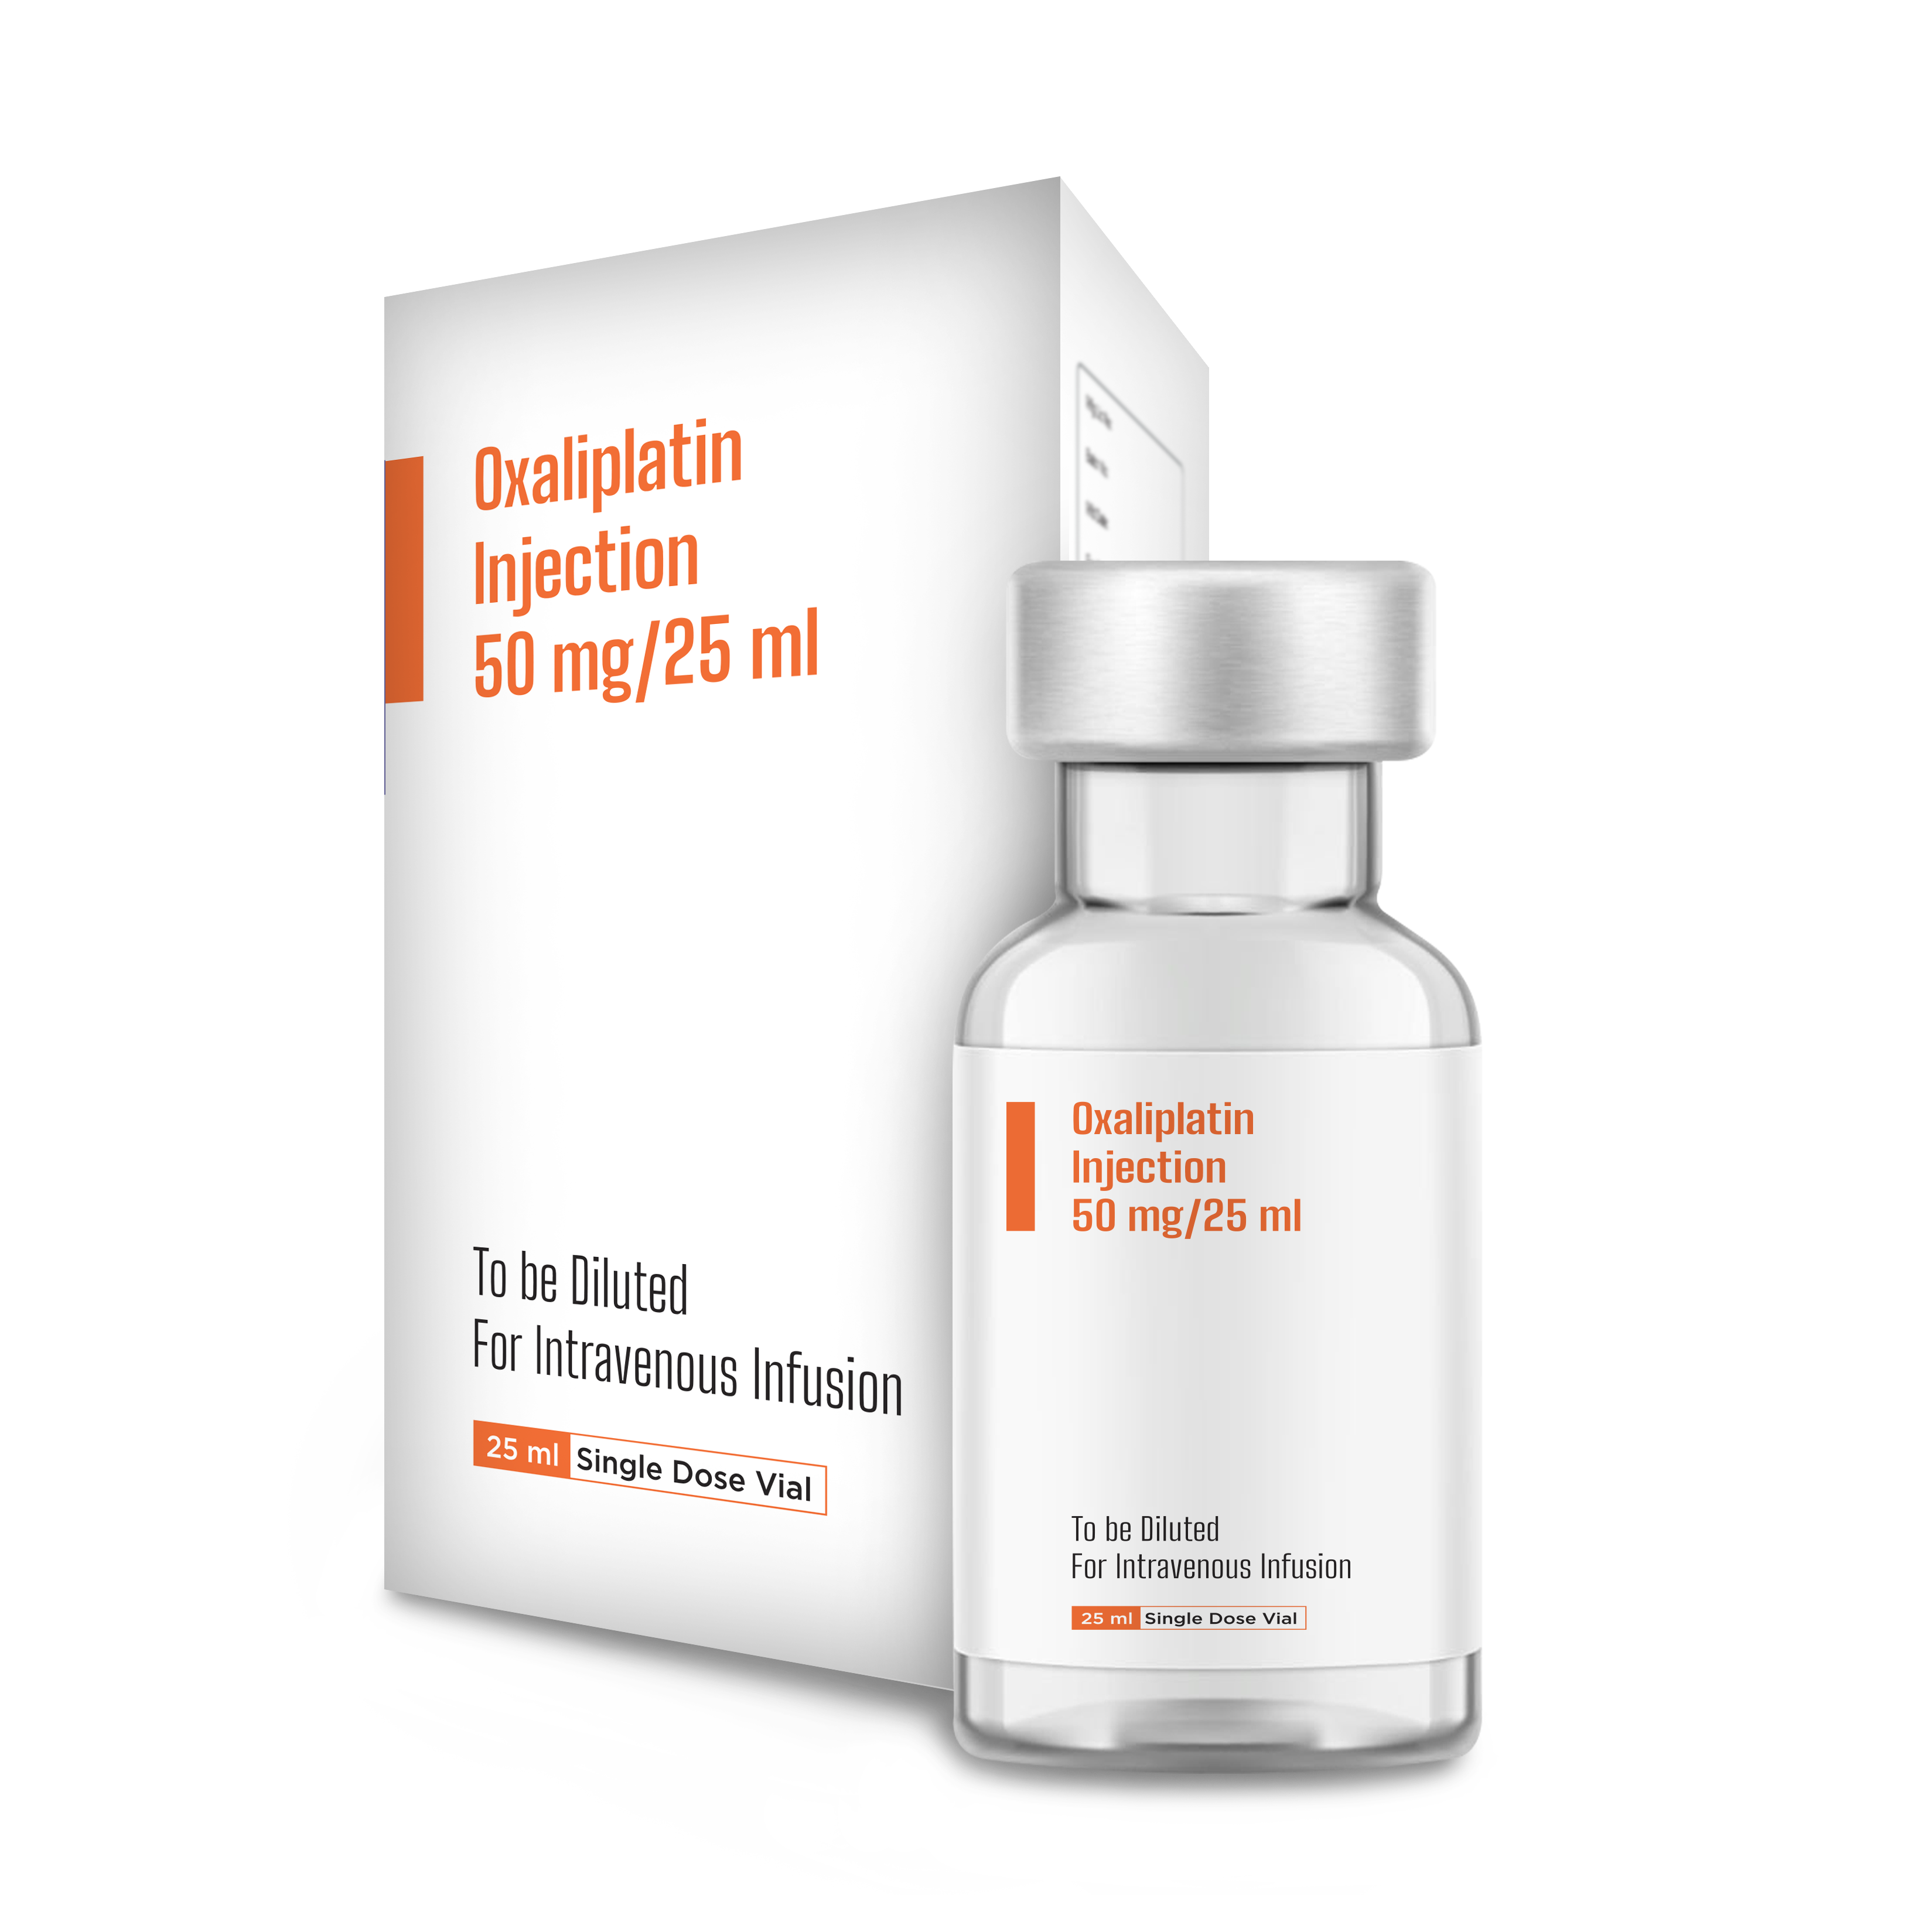 Oxaliplatin Injection 50 mg/25 ml